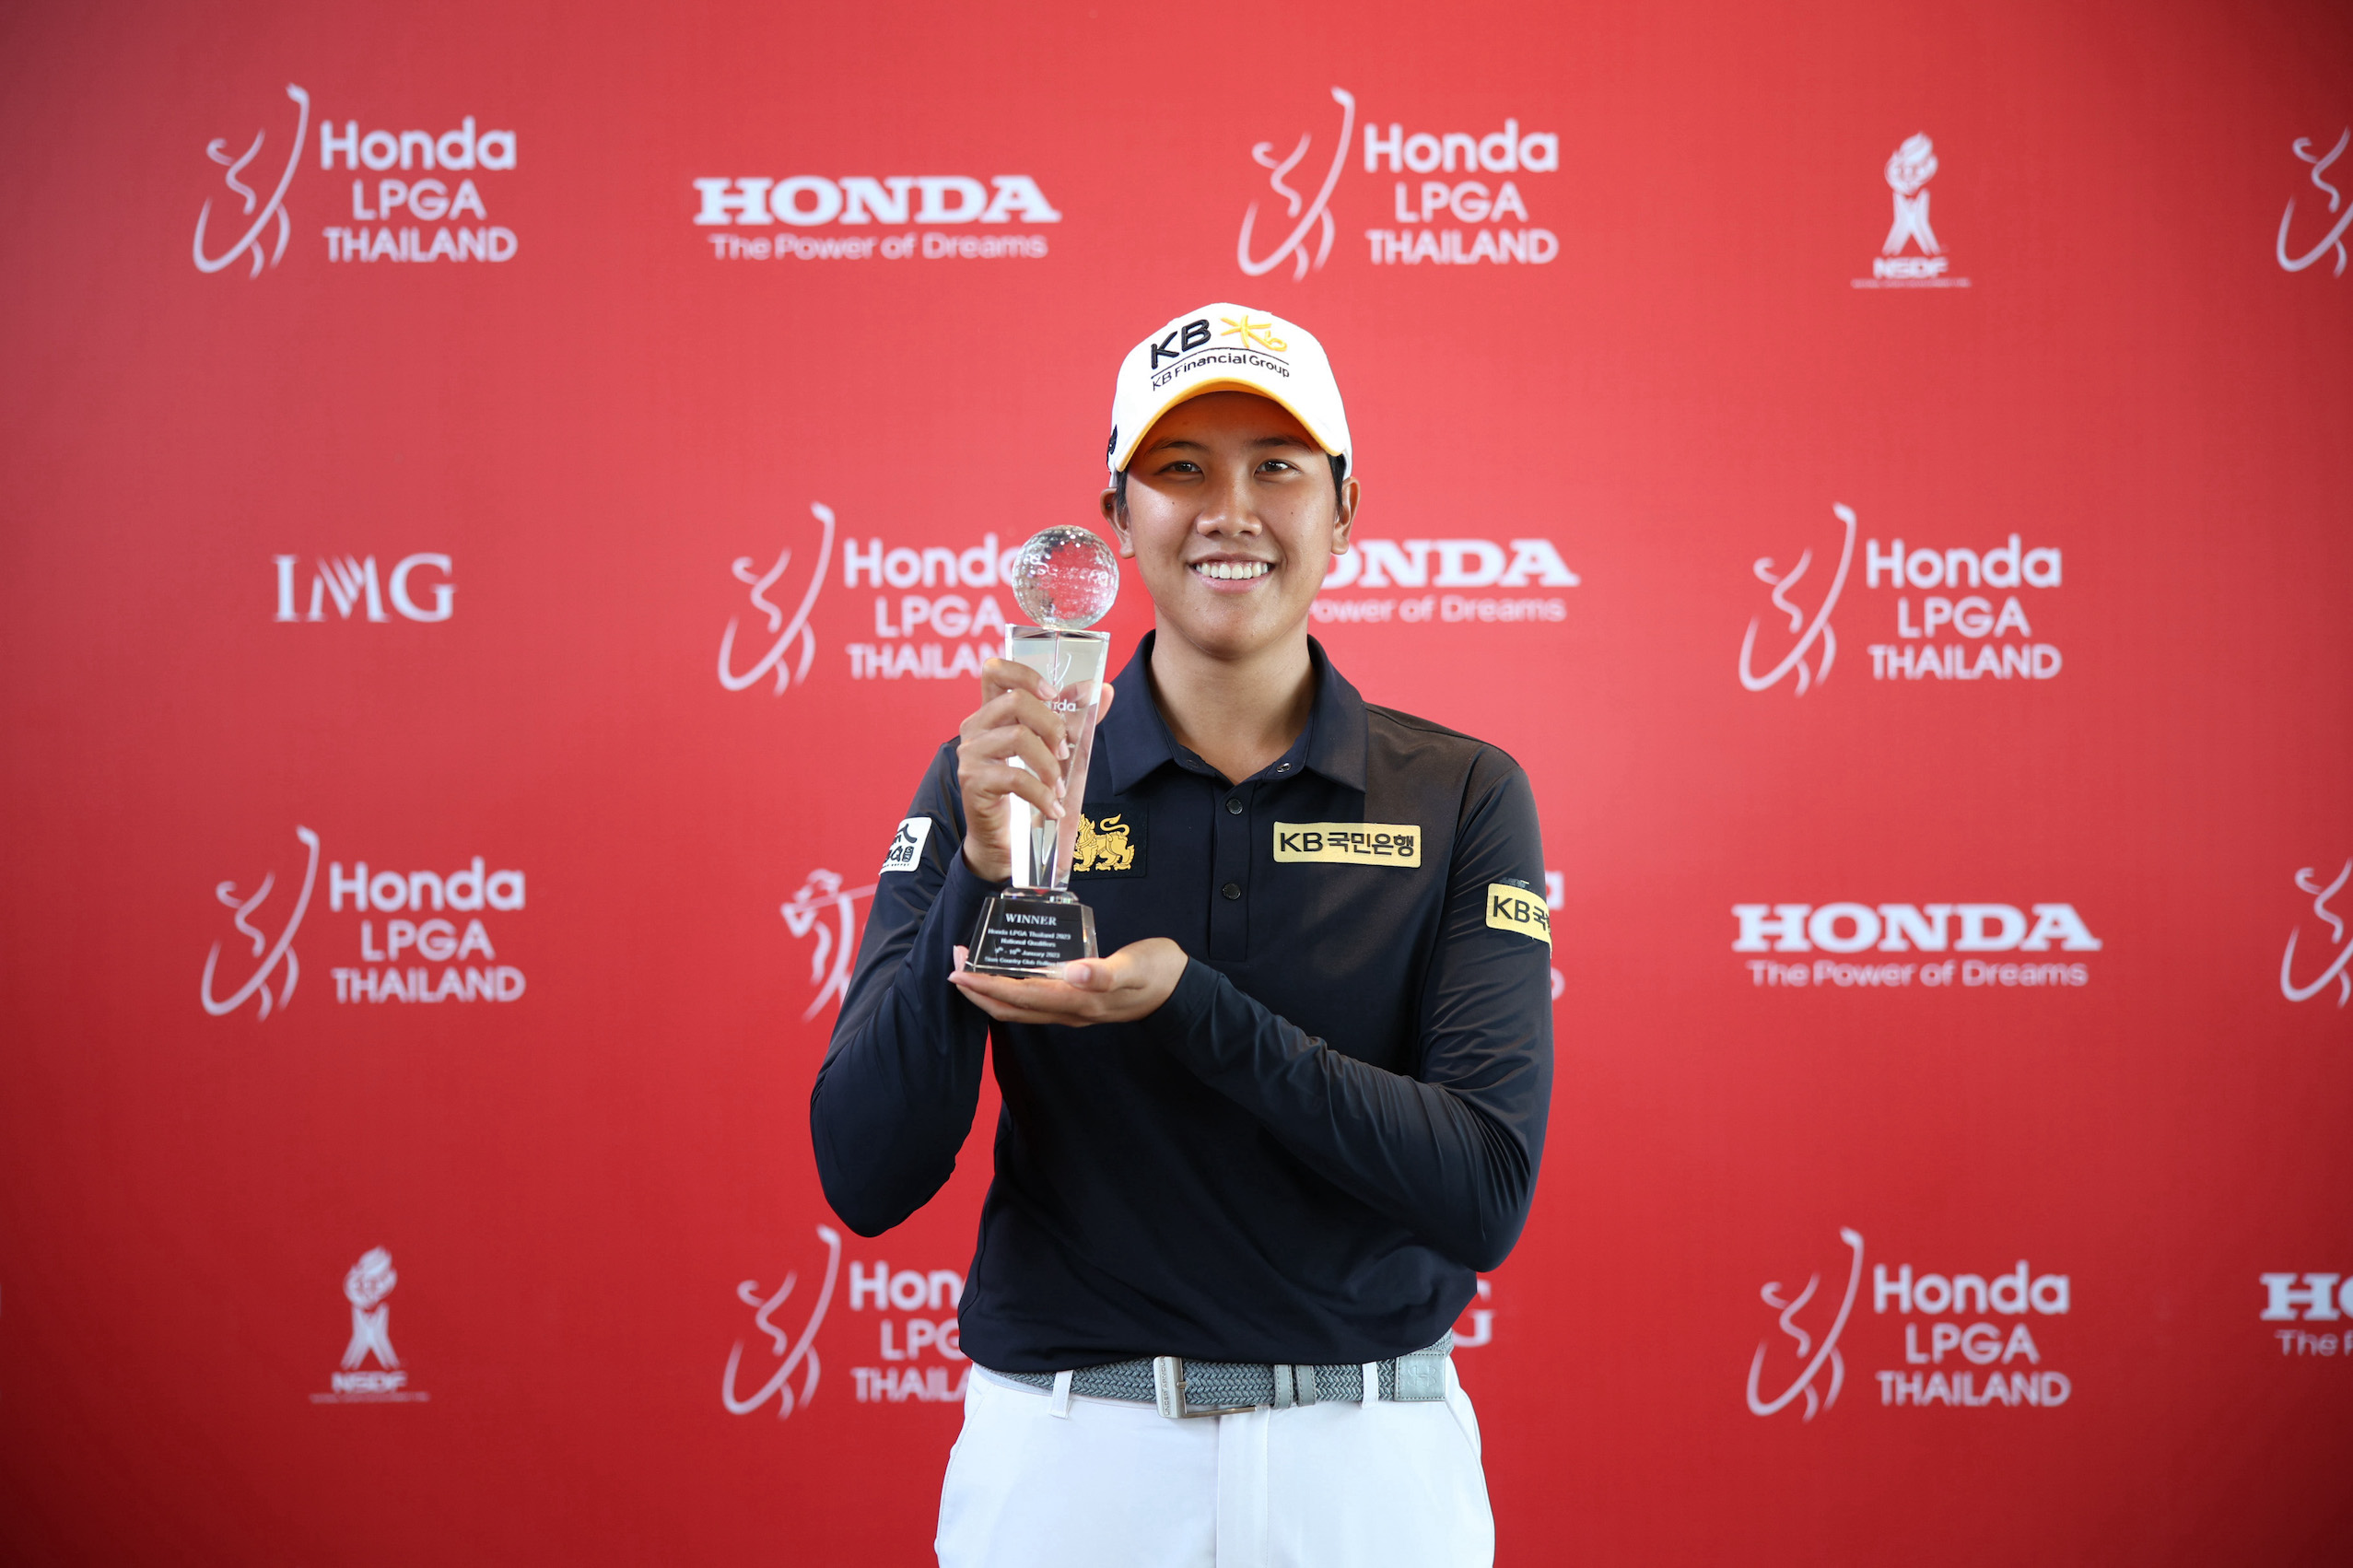 โปรซิม ณัฐกฤตา คว้าตำแหน่งผู้ชนะ Honda LPGA Thailand 2023 National  Qualifiers รับสิทธิ์เข้าดวลวงสวิงกับนักกอล์ฟหญิงระดับโลก ในการแข่งขัน Honda  LPGA Thailand 2023 ชิงรางวัล 1.7 ล้านดอลลาร์